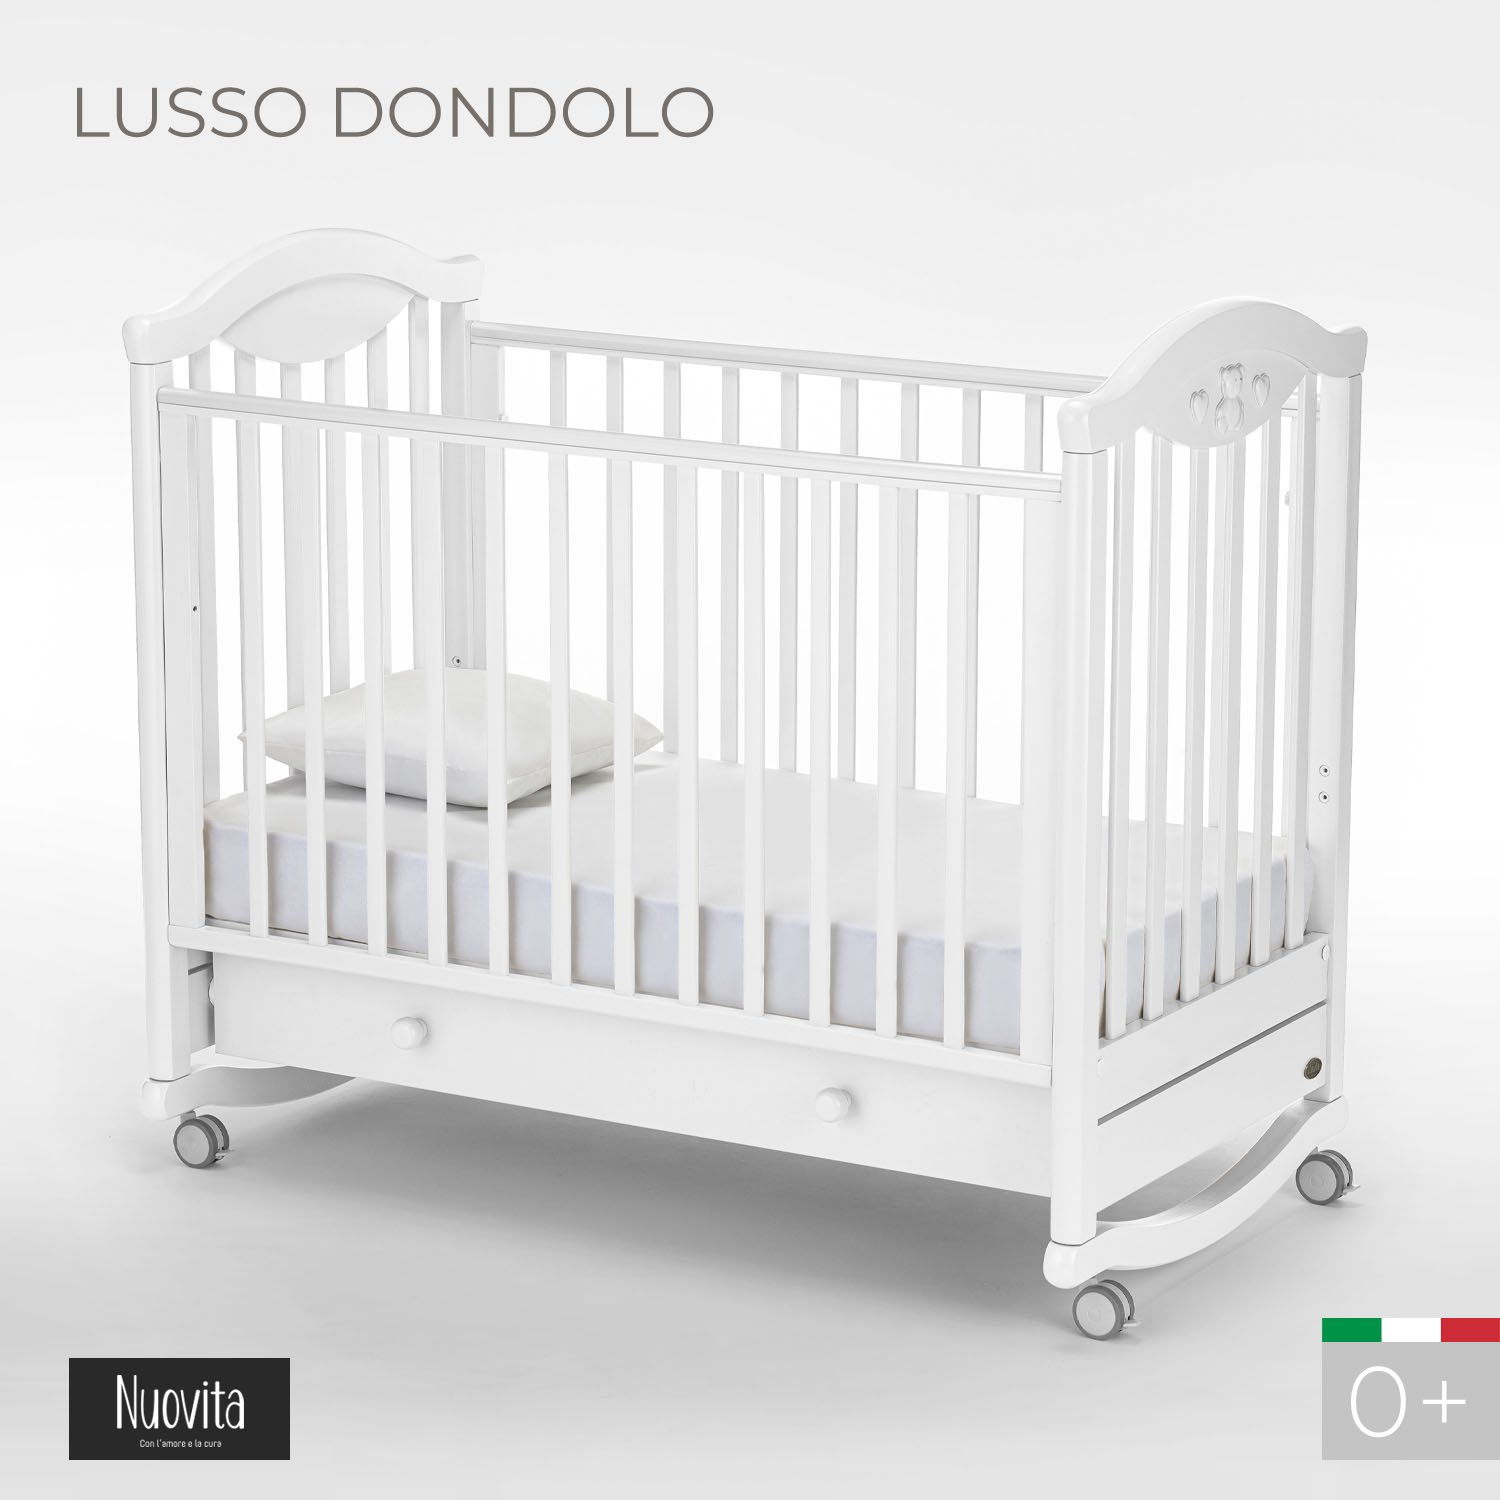 Кроватка Nuovita Lusso Dondolo колесо-качалка bianco белый